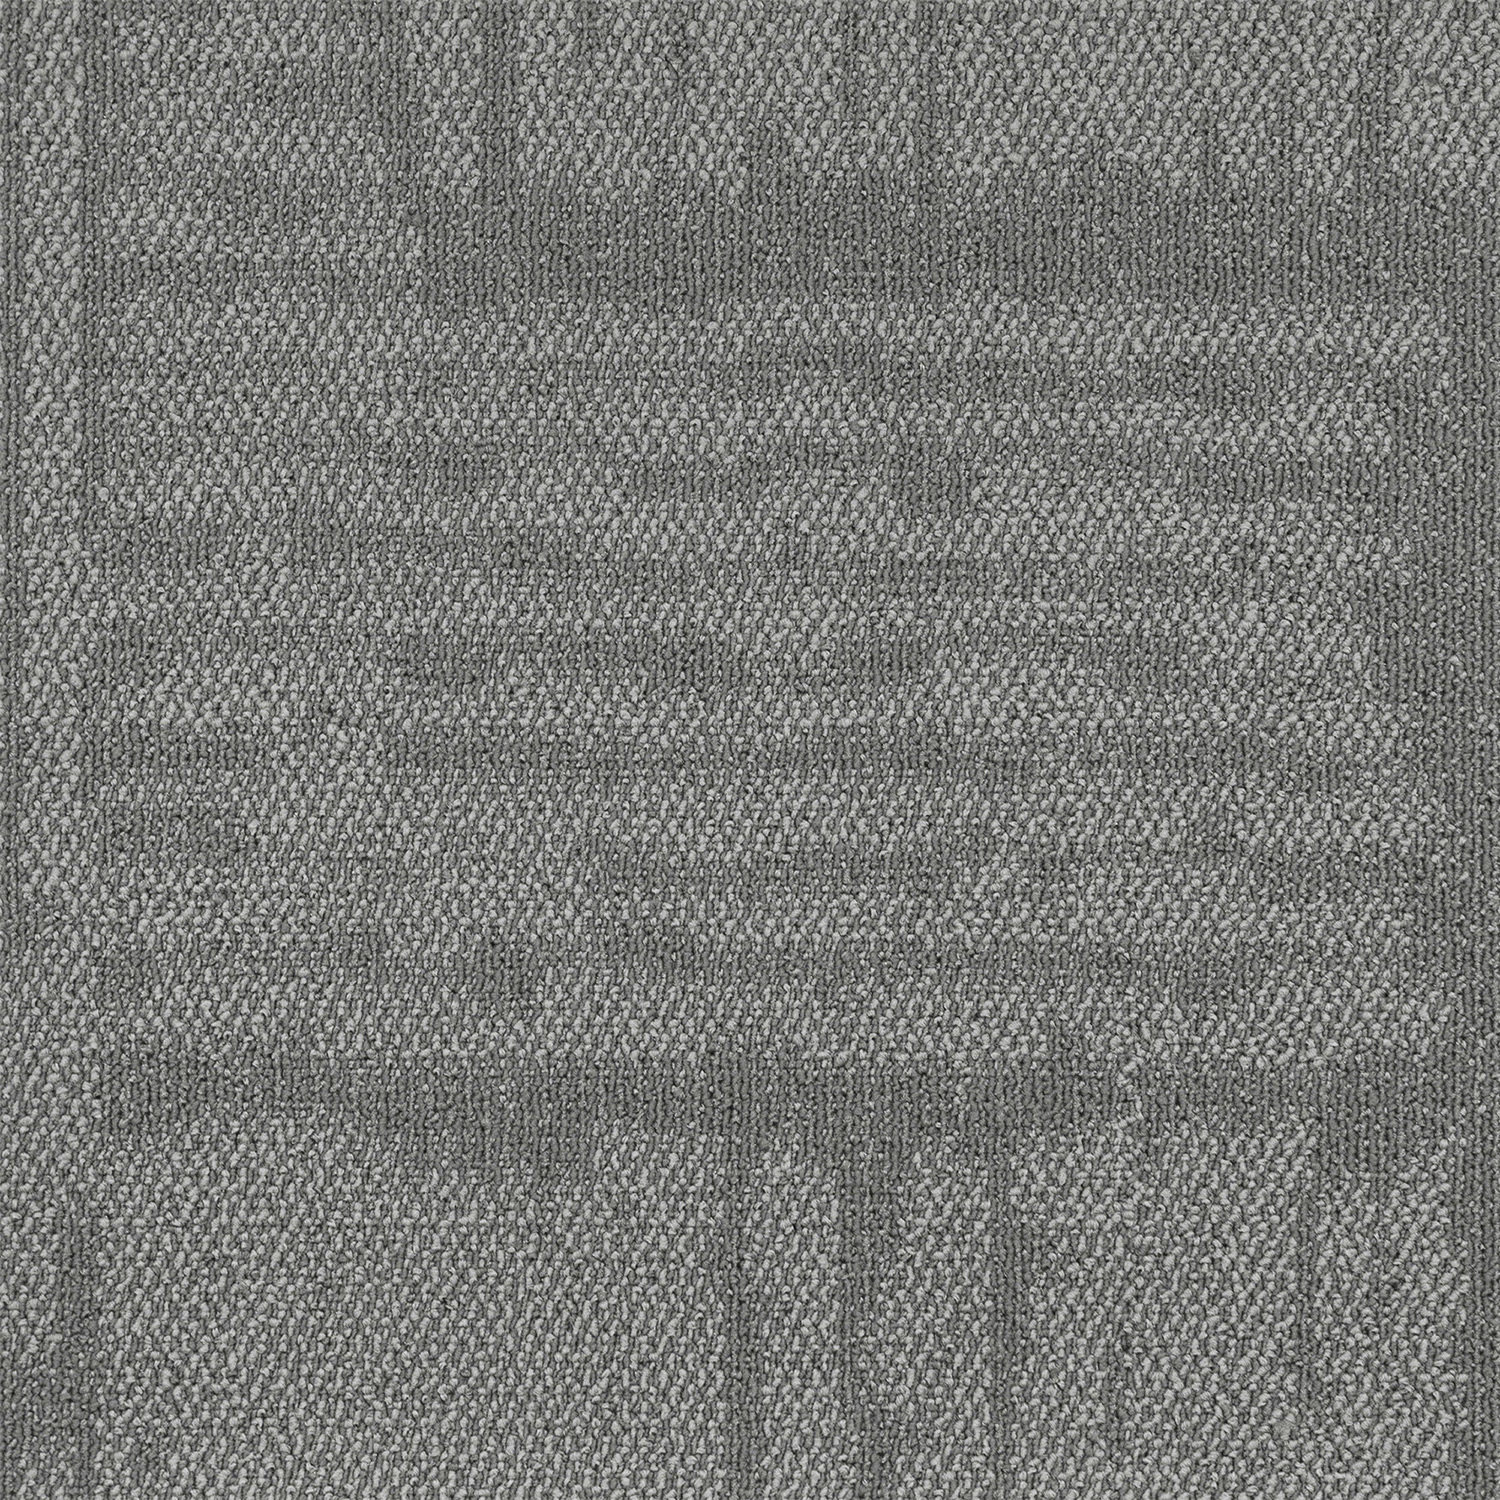 LAGOM227 Best Price Nylon Stripe Office Carpet Tile Factory